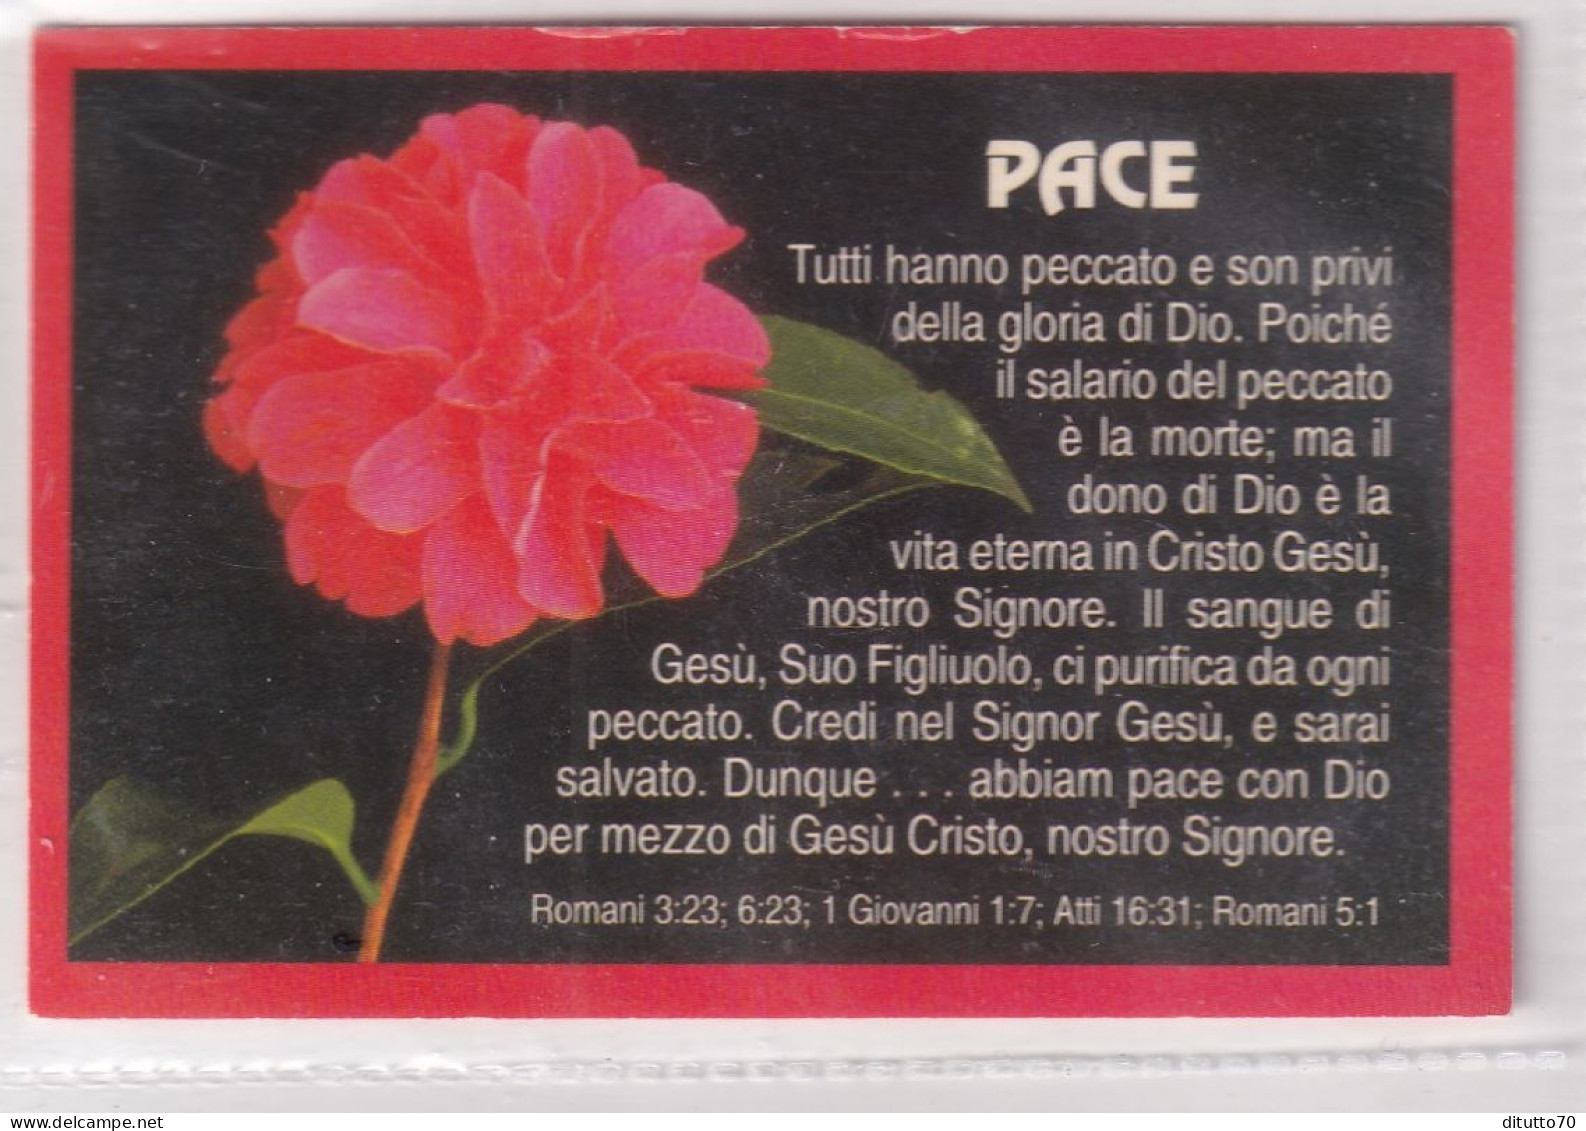 Calendarietto - Pace - Roma - Anno 1997 - Small : 1991-00